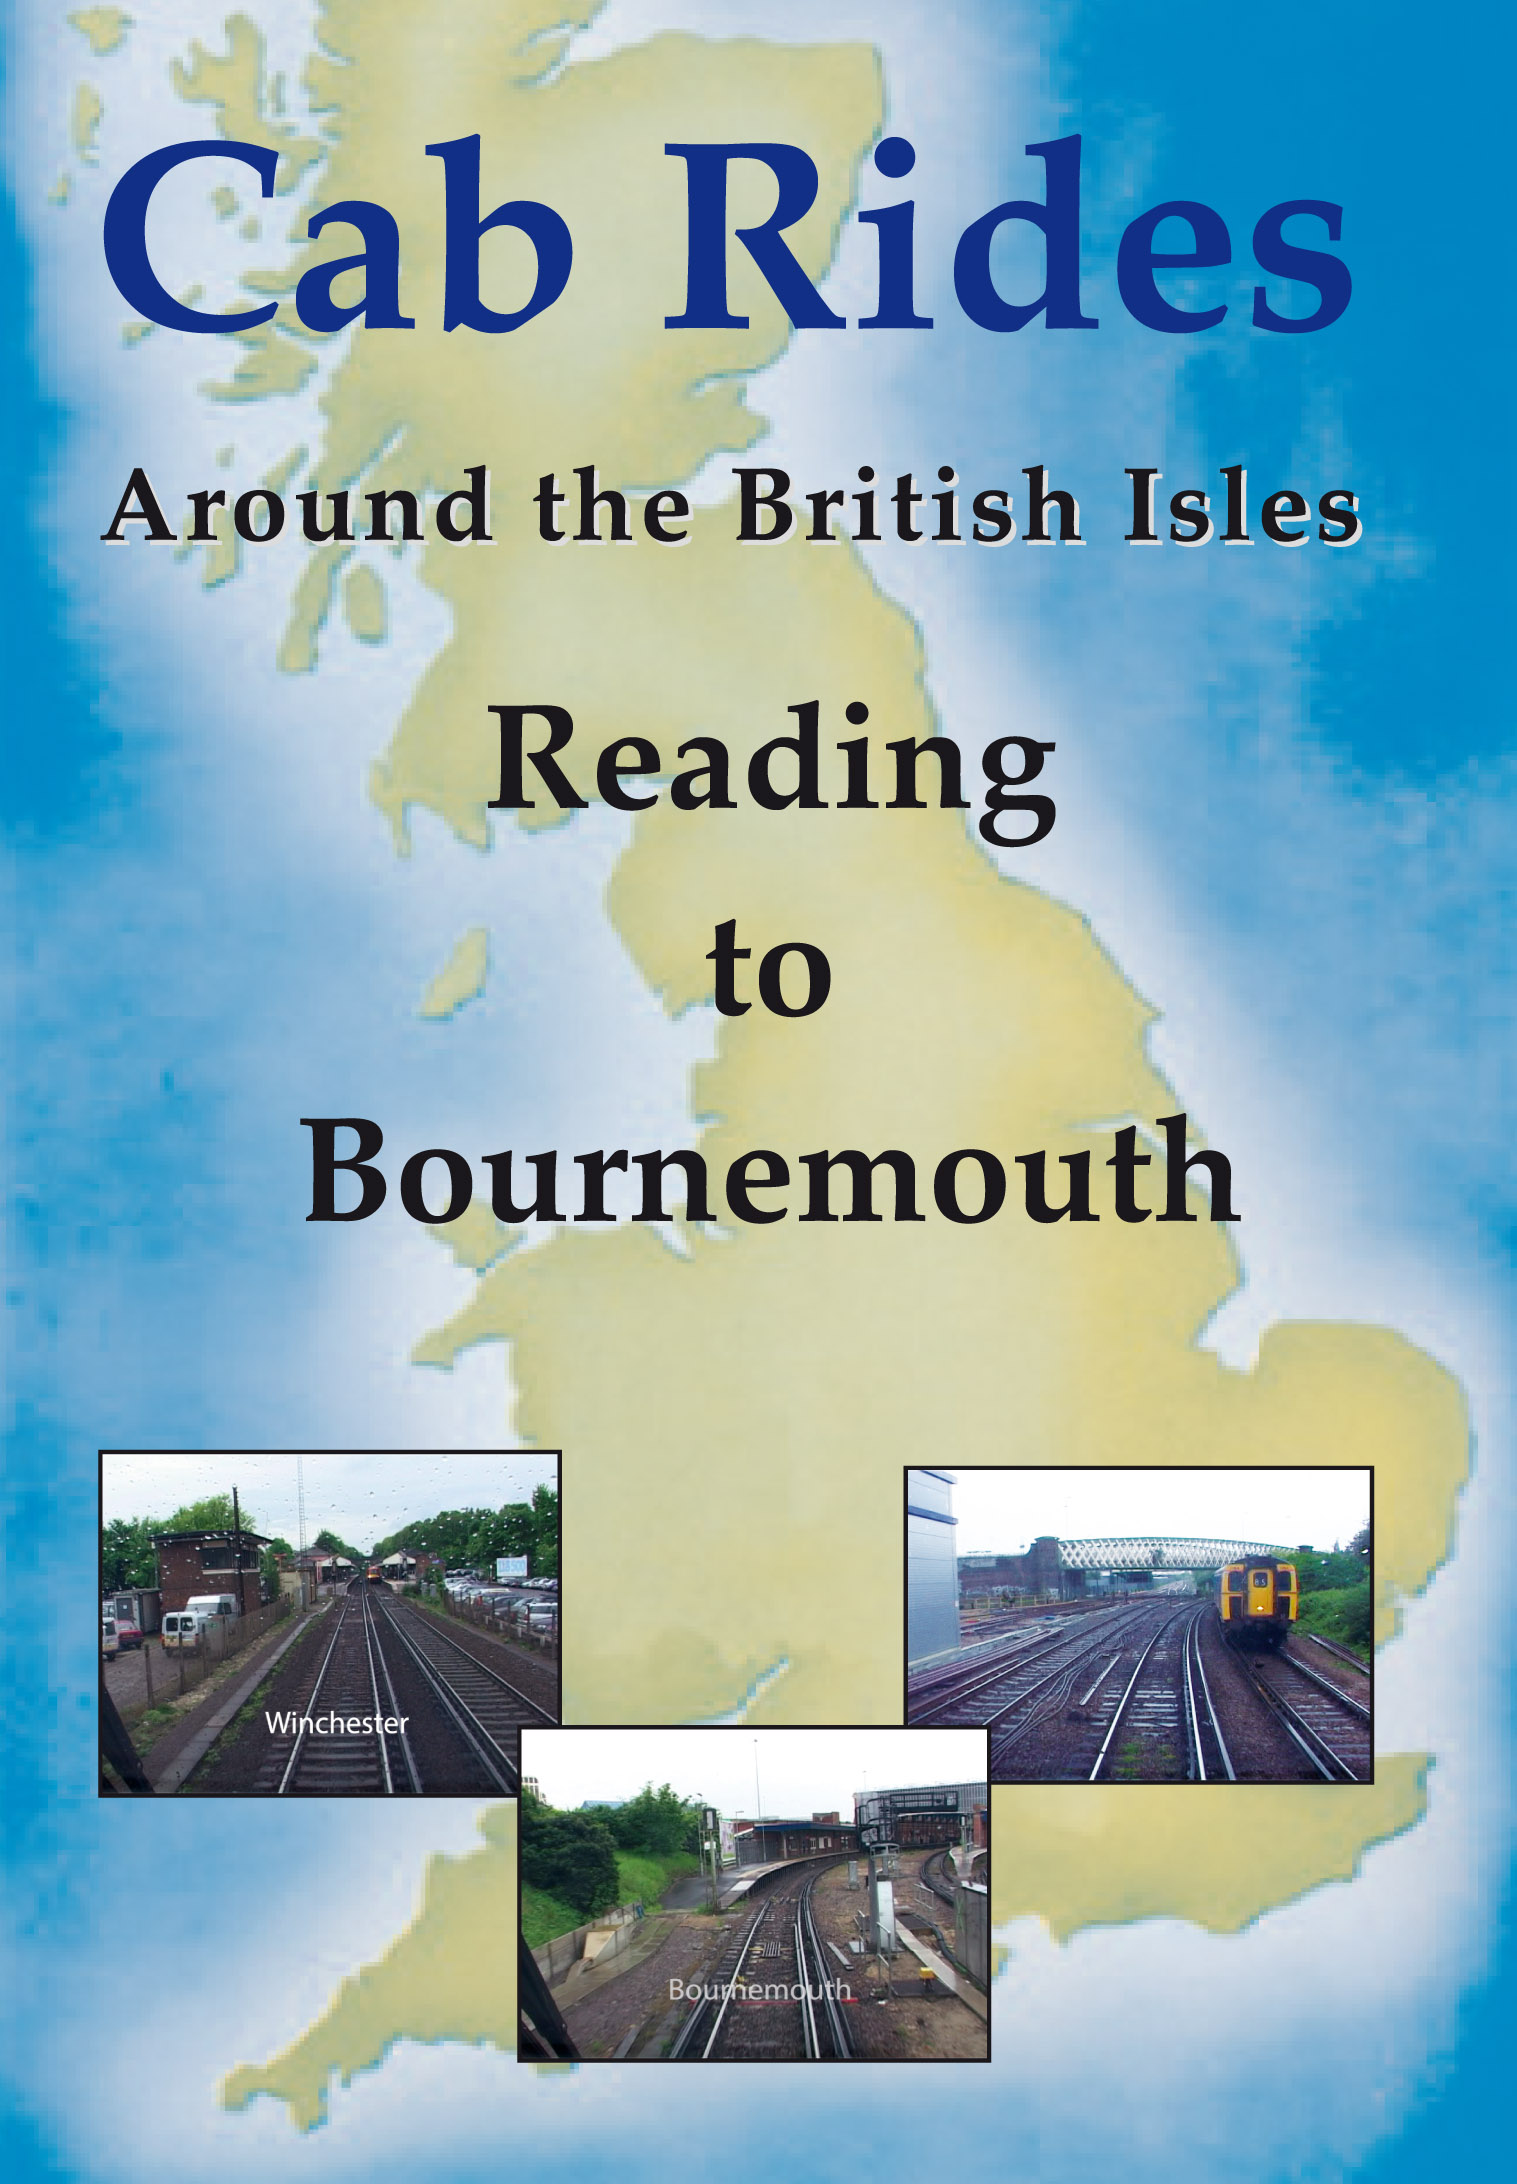 Cab Rides Around the British Isles: Reading to Bournemouth